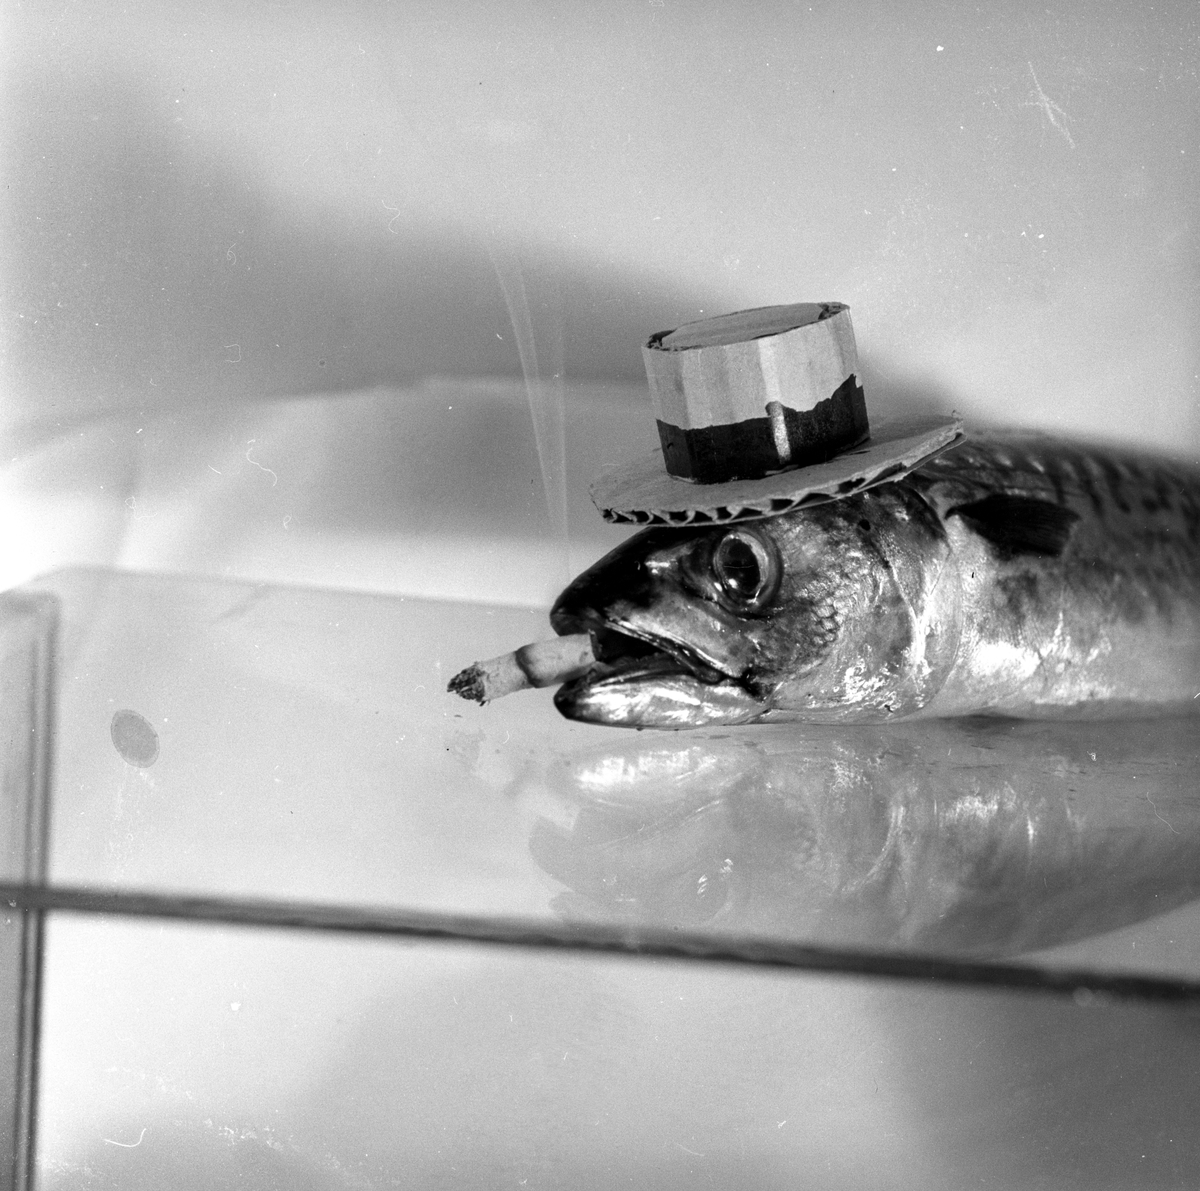 Mann som later som skal spise rå makrell.
Fotografert 1954.